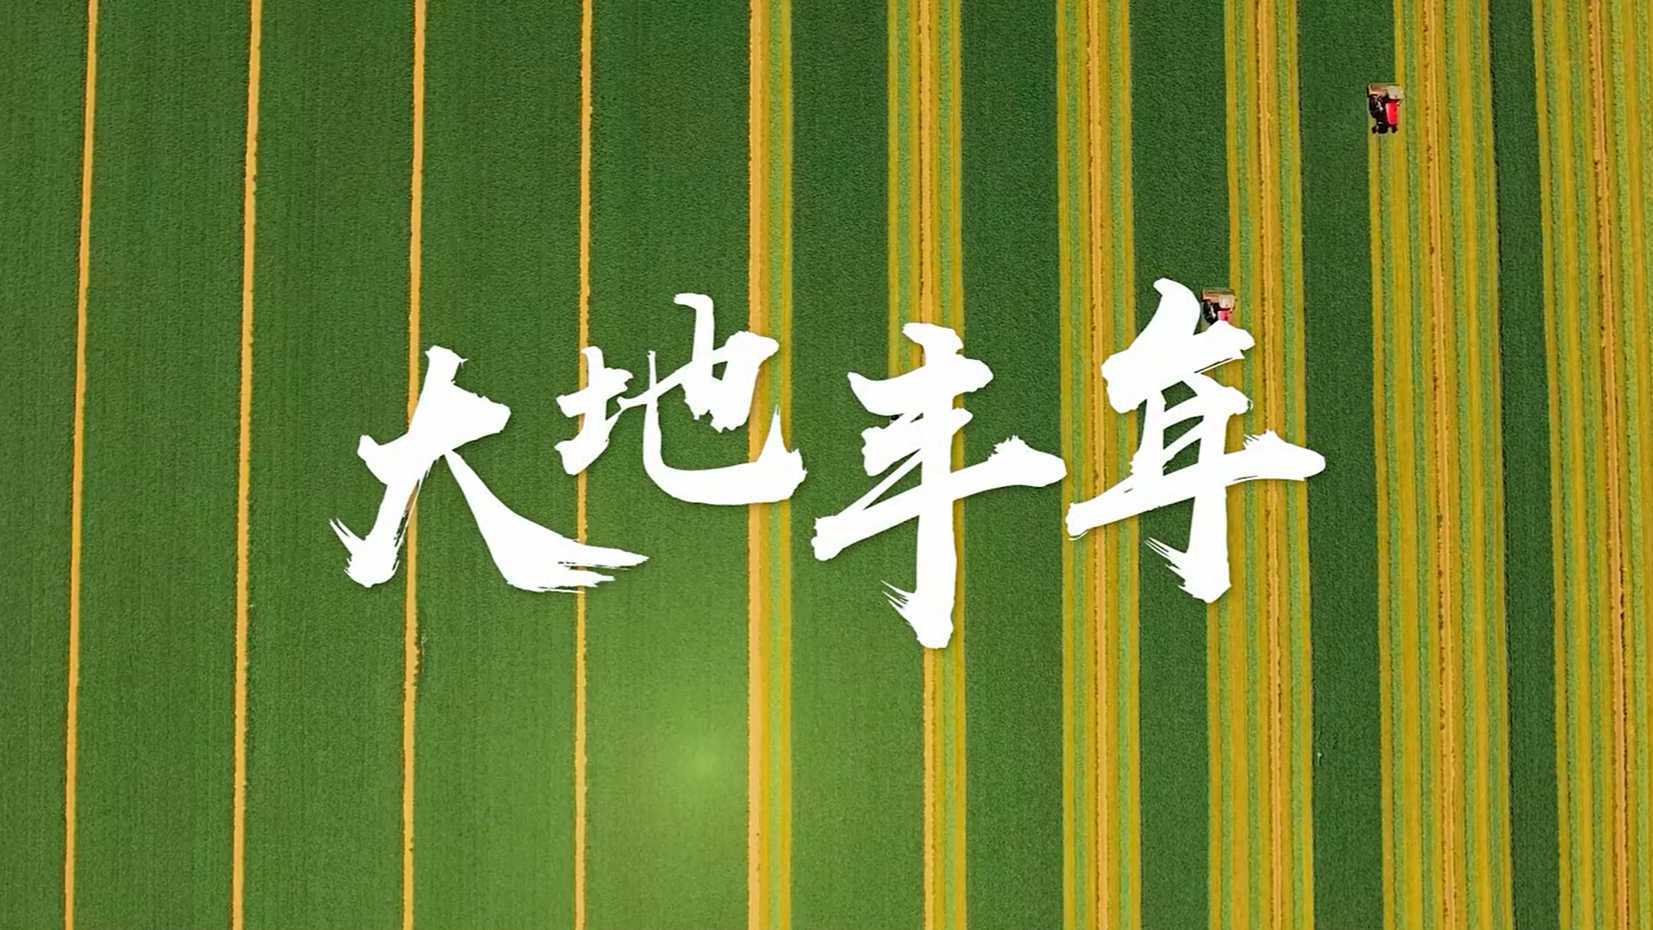 中国农民丰收节 李立宏  梵曲配音